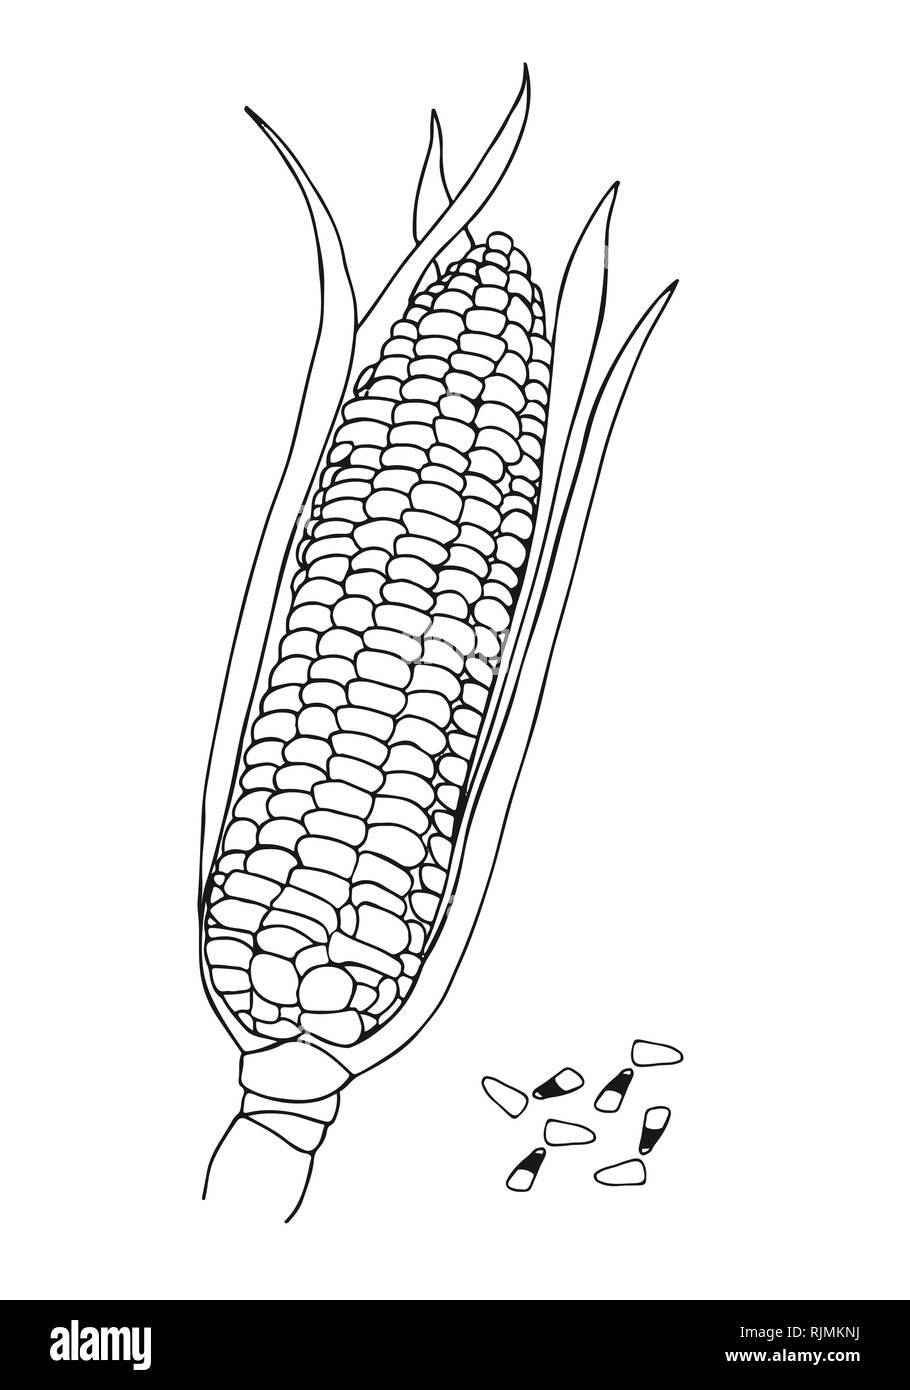 Vector hand drawn doodle des épis de maïs et les grains de maïs Illustration de Vecteur